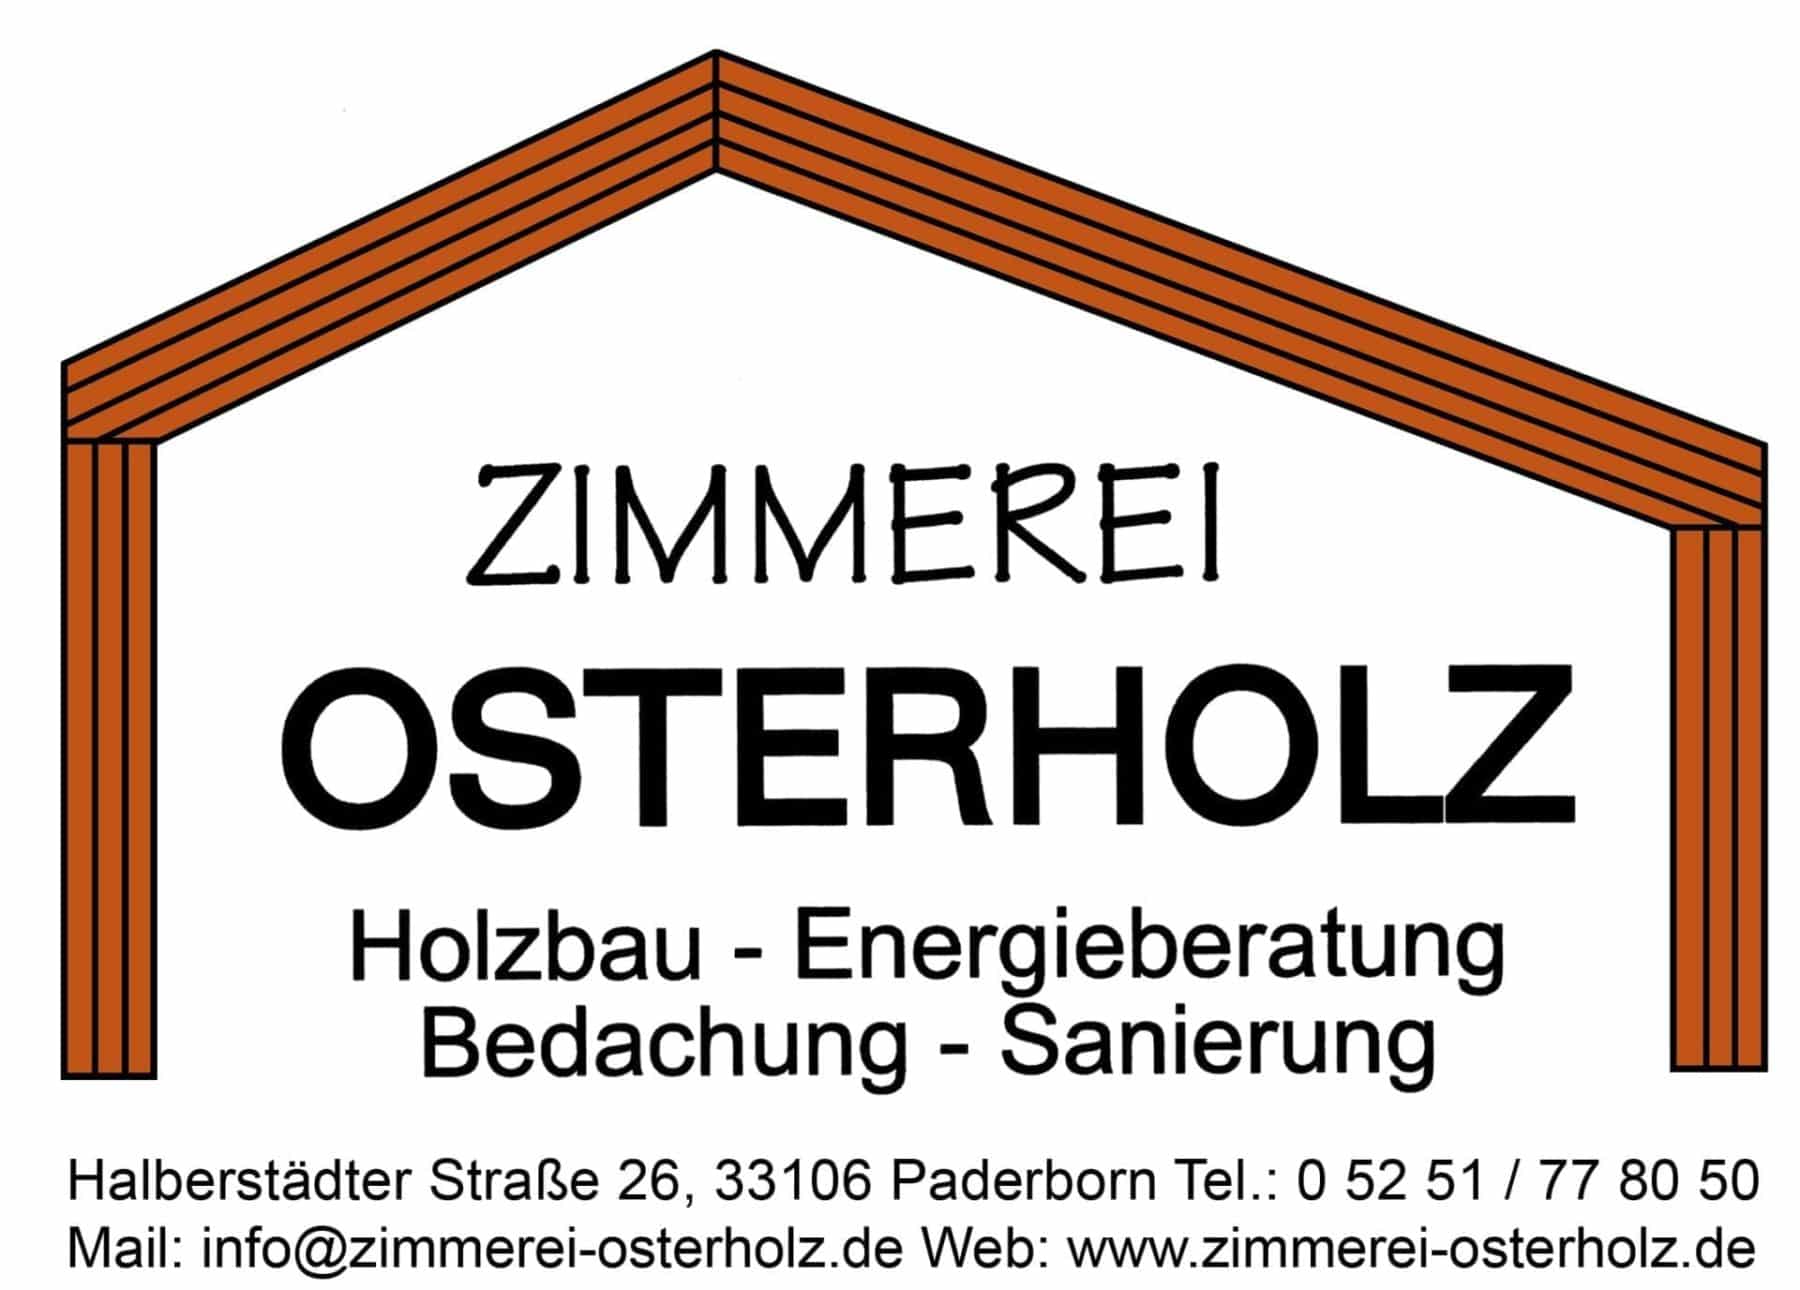 Zimmerei Osterholz Paderborn - Bildquelle: Zimmerei Osterholz Paderborn 